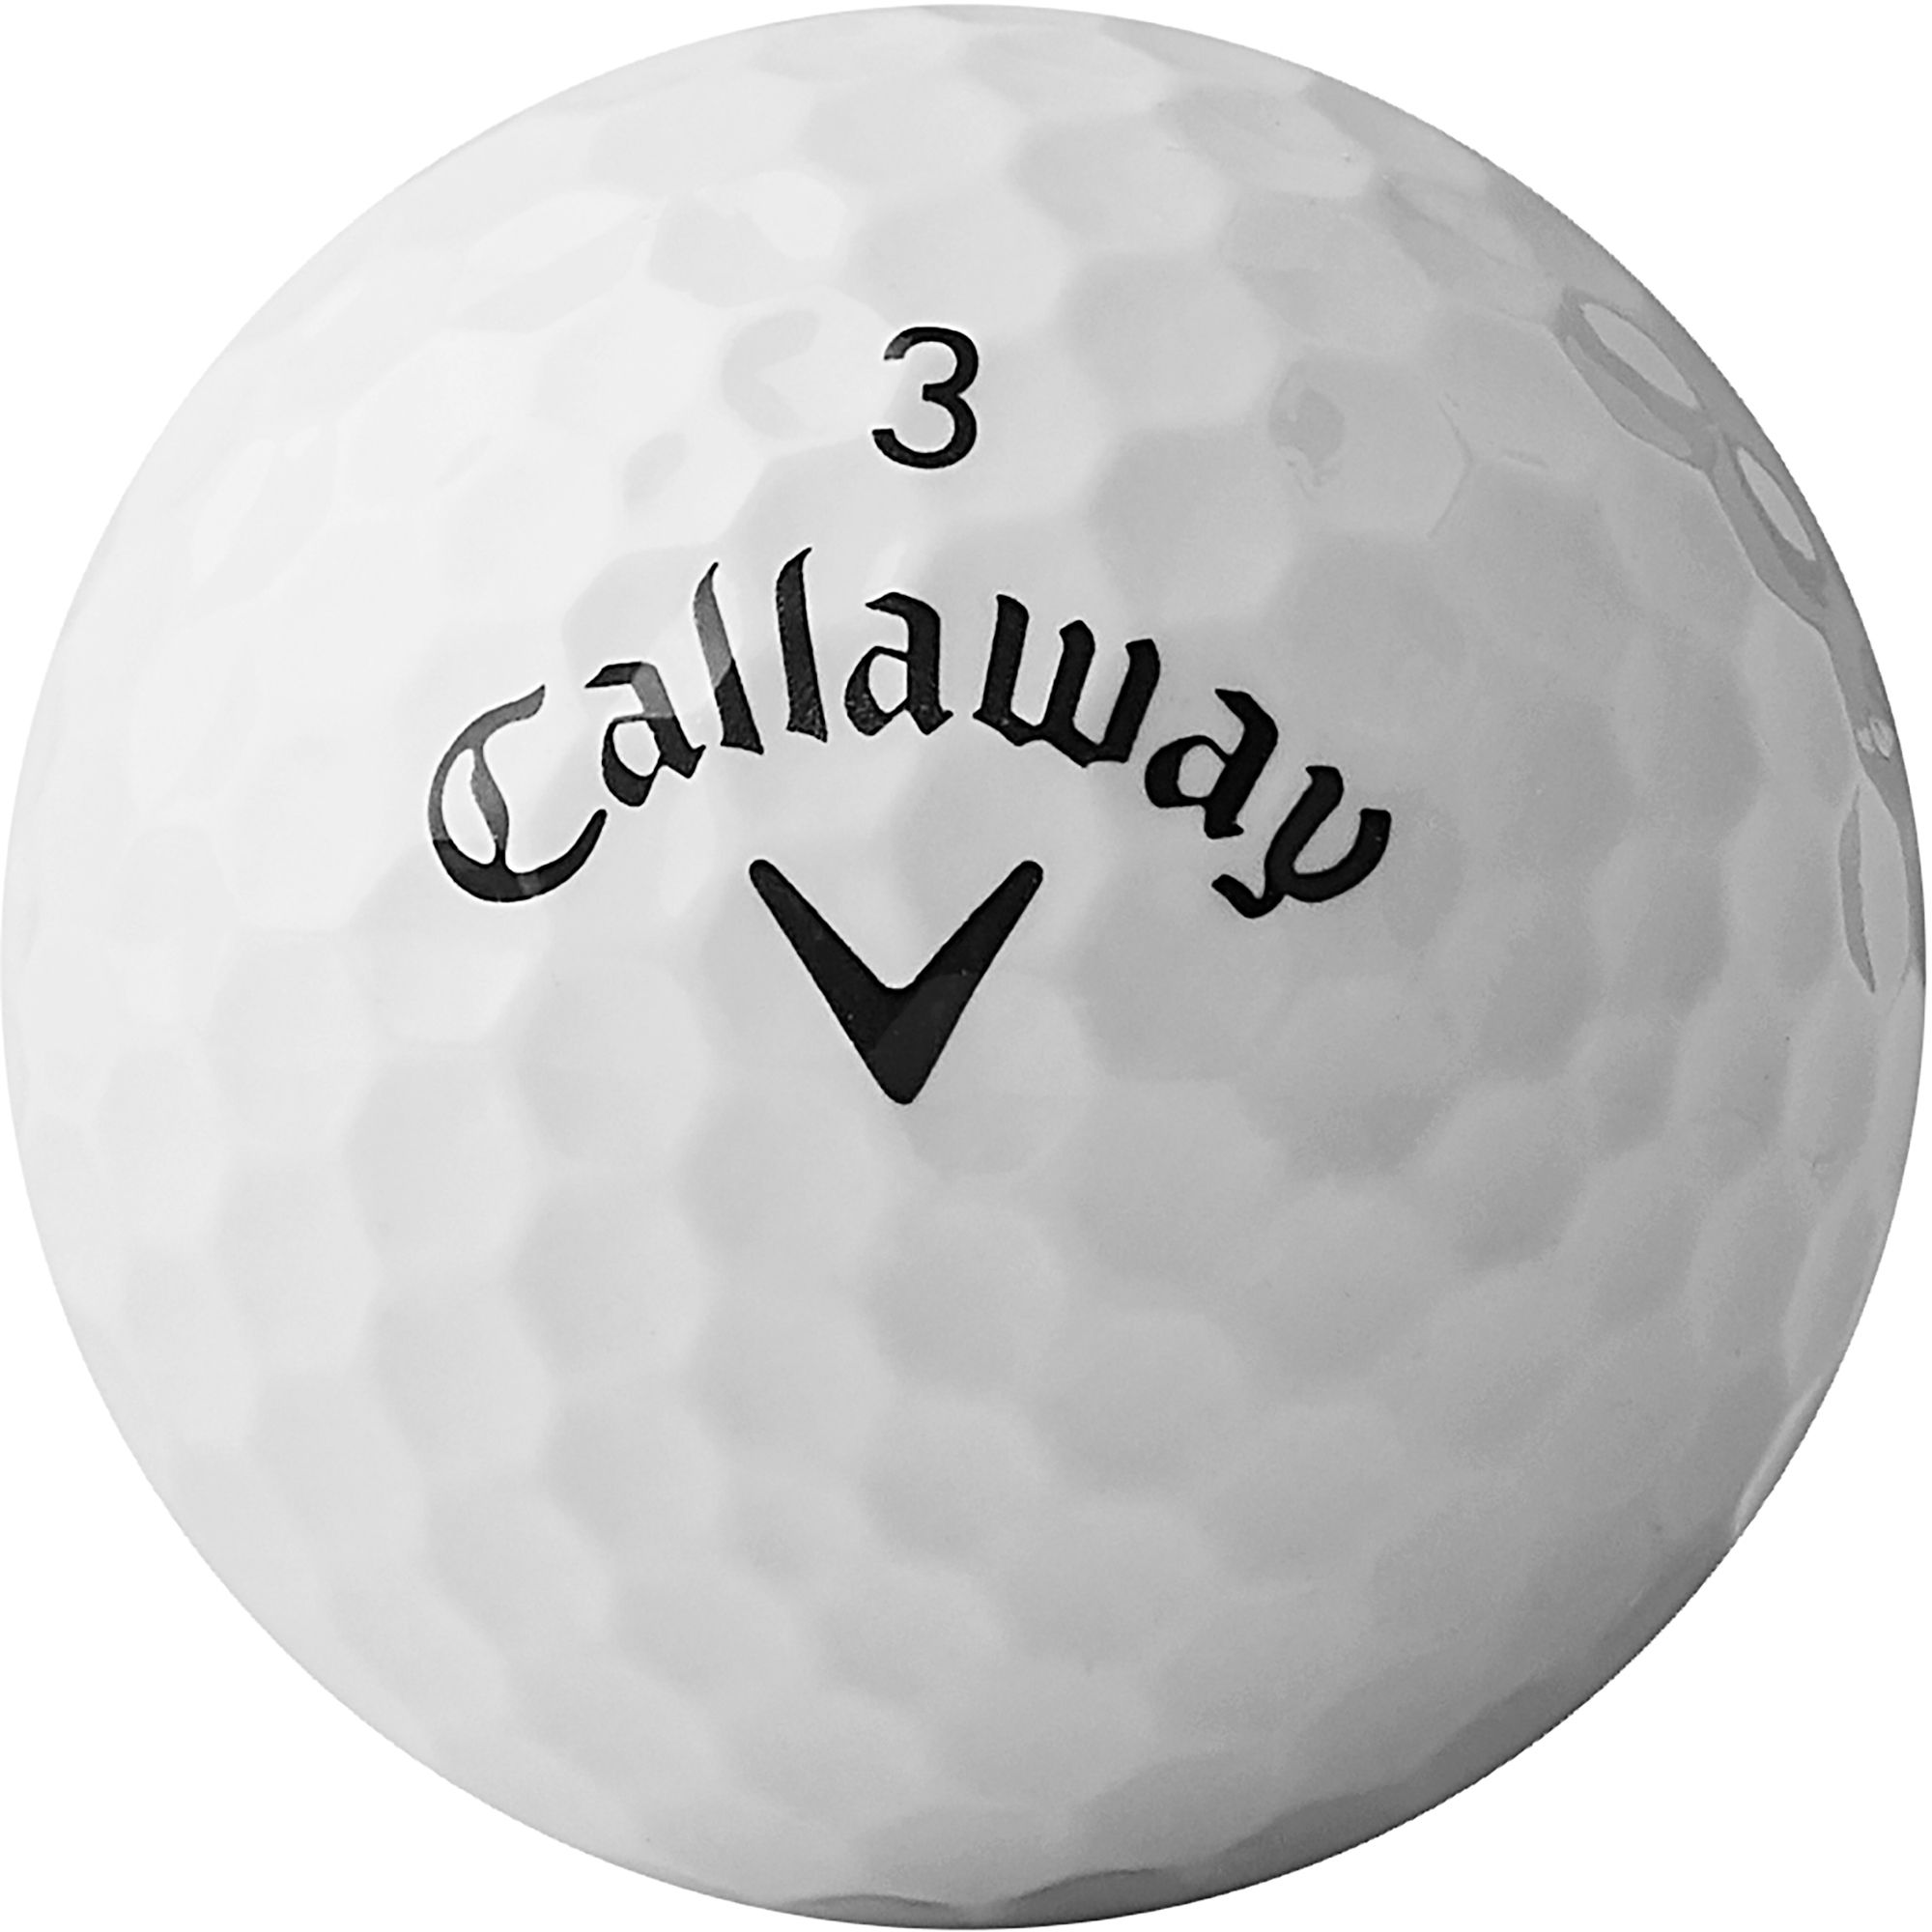 Callaway Women's 2020 Diablo Golf Balls